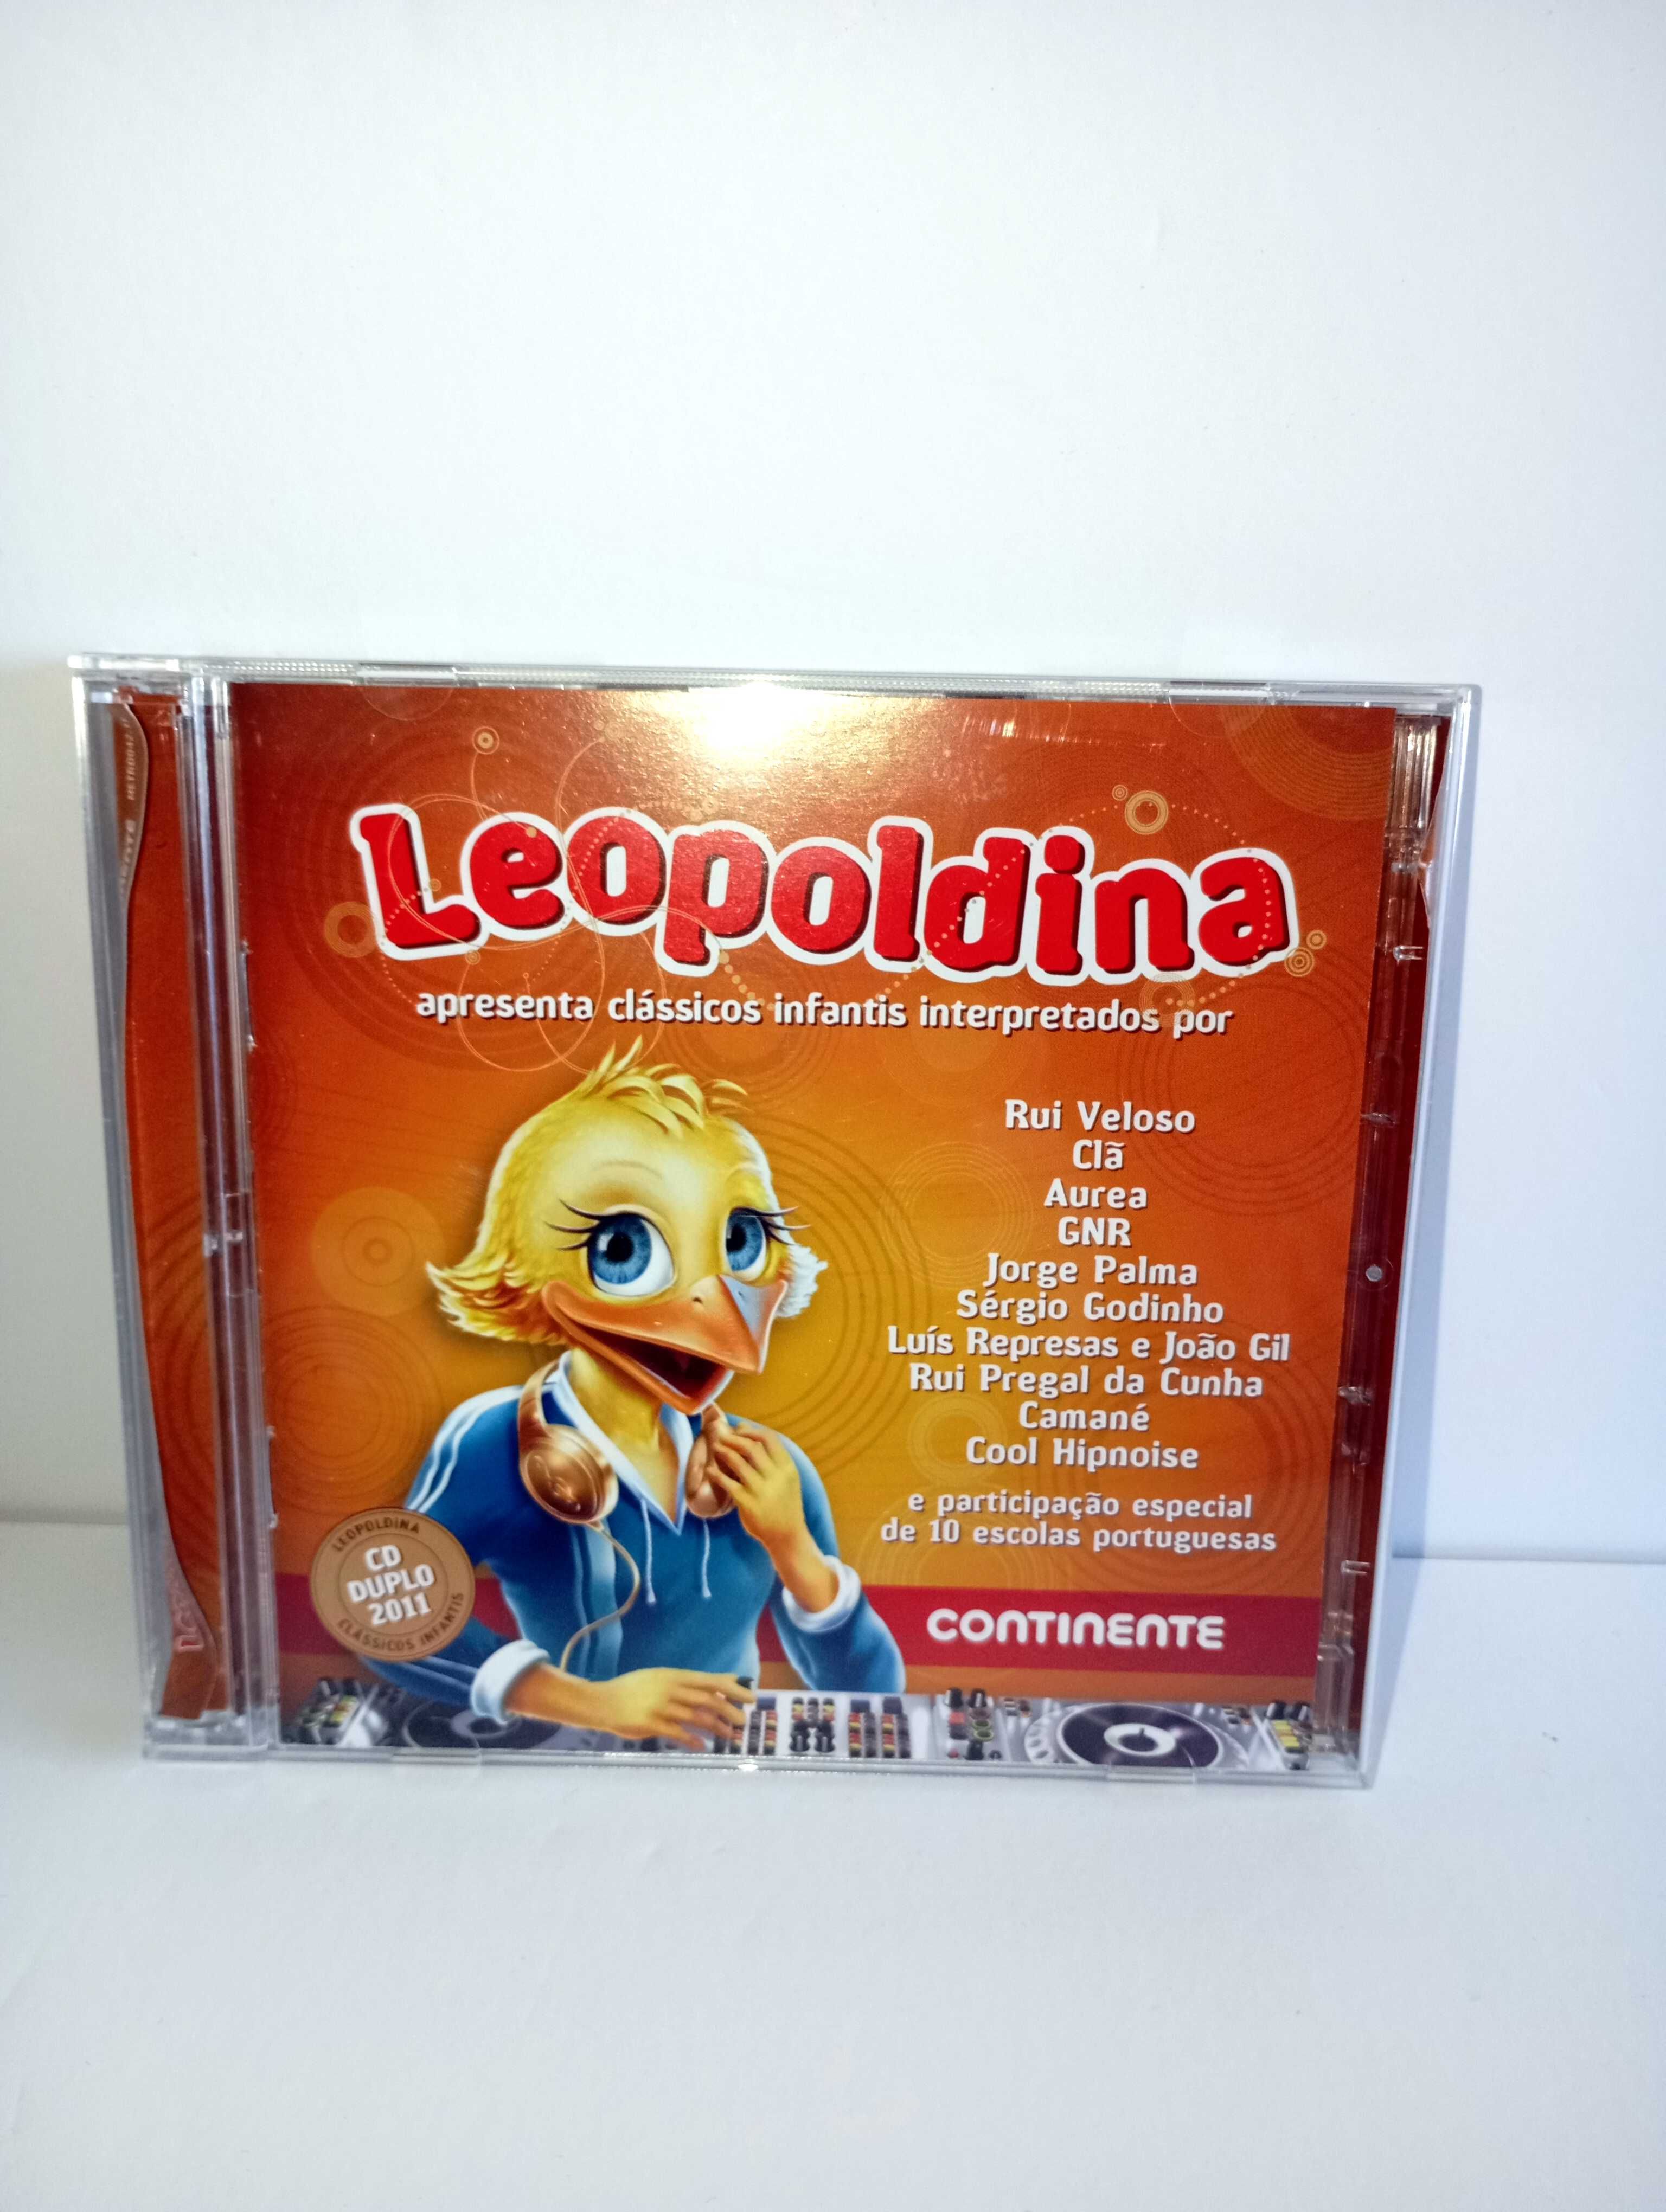 Cd Duplo Original - Leopoldina e Clássicos Infantis